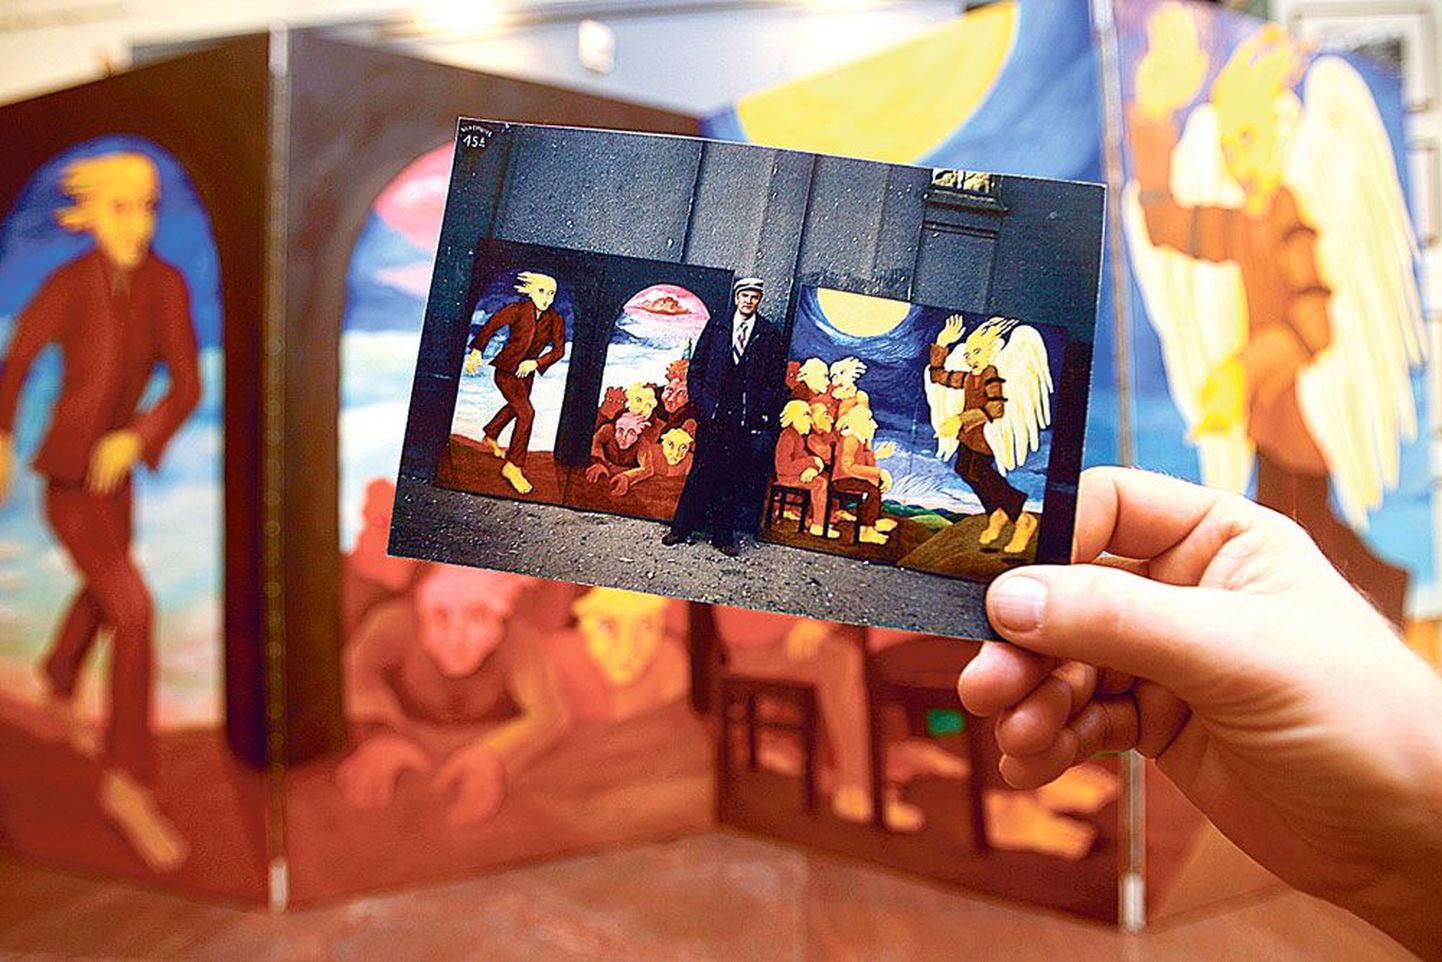 Kunstnik Jüri Arrak tegi foto oma maalidest ja nende vahel seisvast sõbrast Vaino Vahingust Vanemuise väikese maja seina ääres aastal 1975 sel päeval, kui ta oli need teosed toonud Tallinnast oma ateljeest Tartusse.